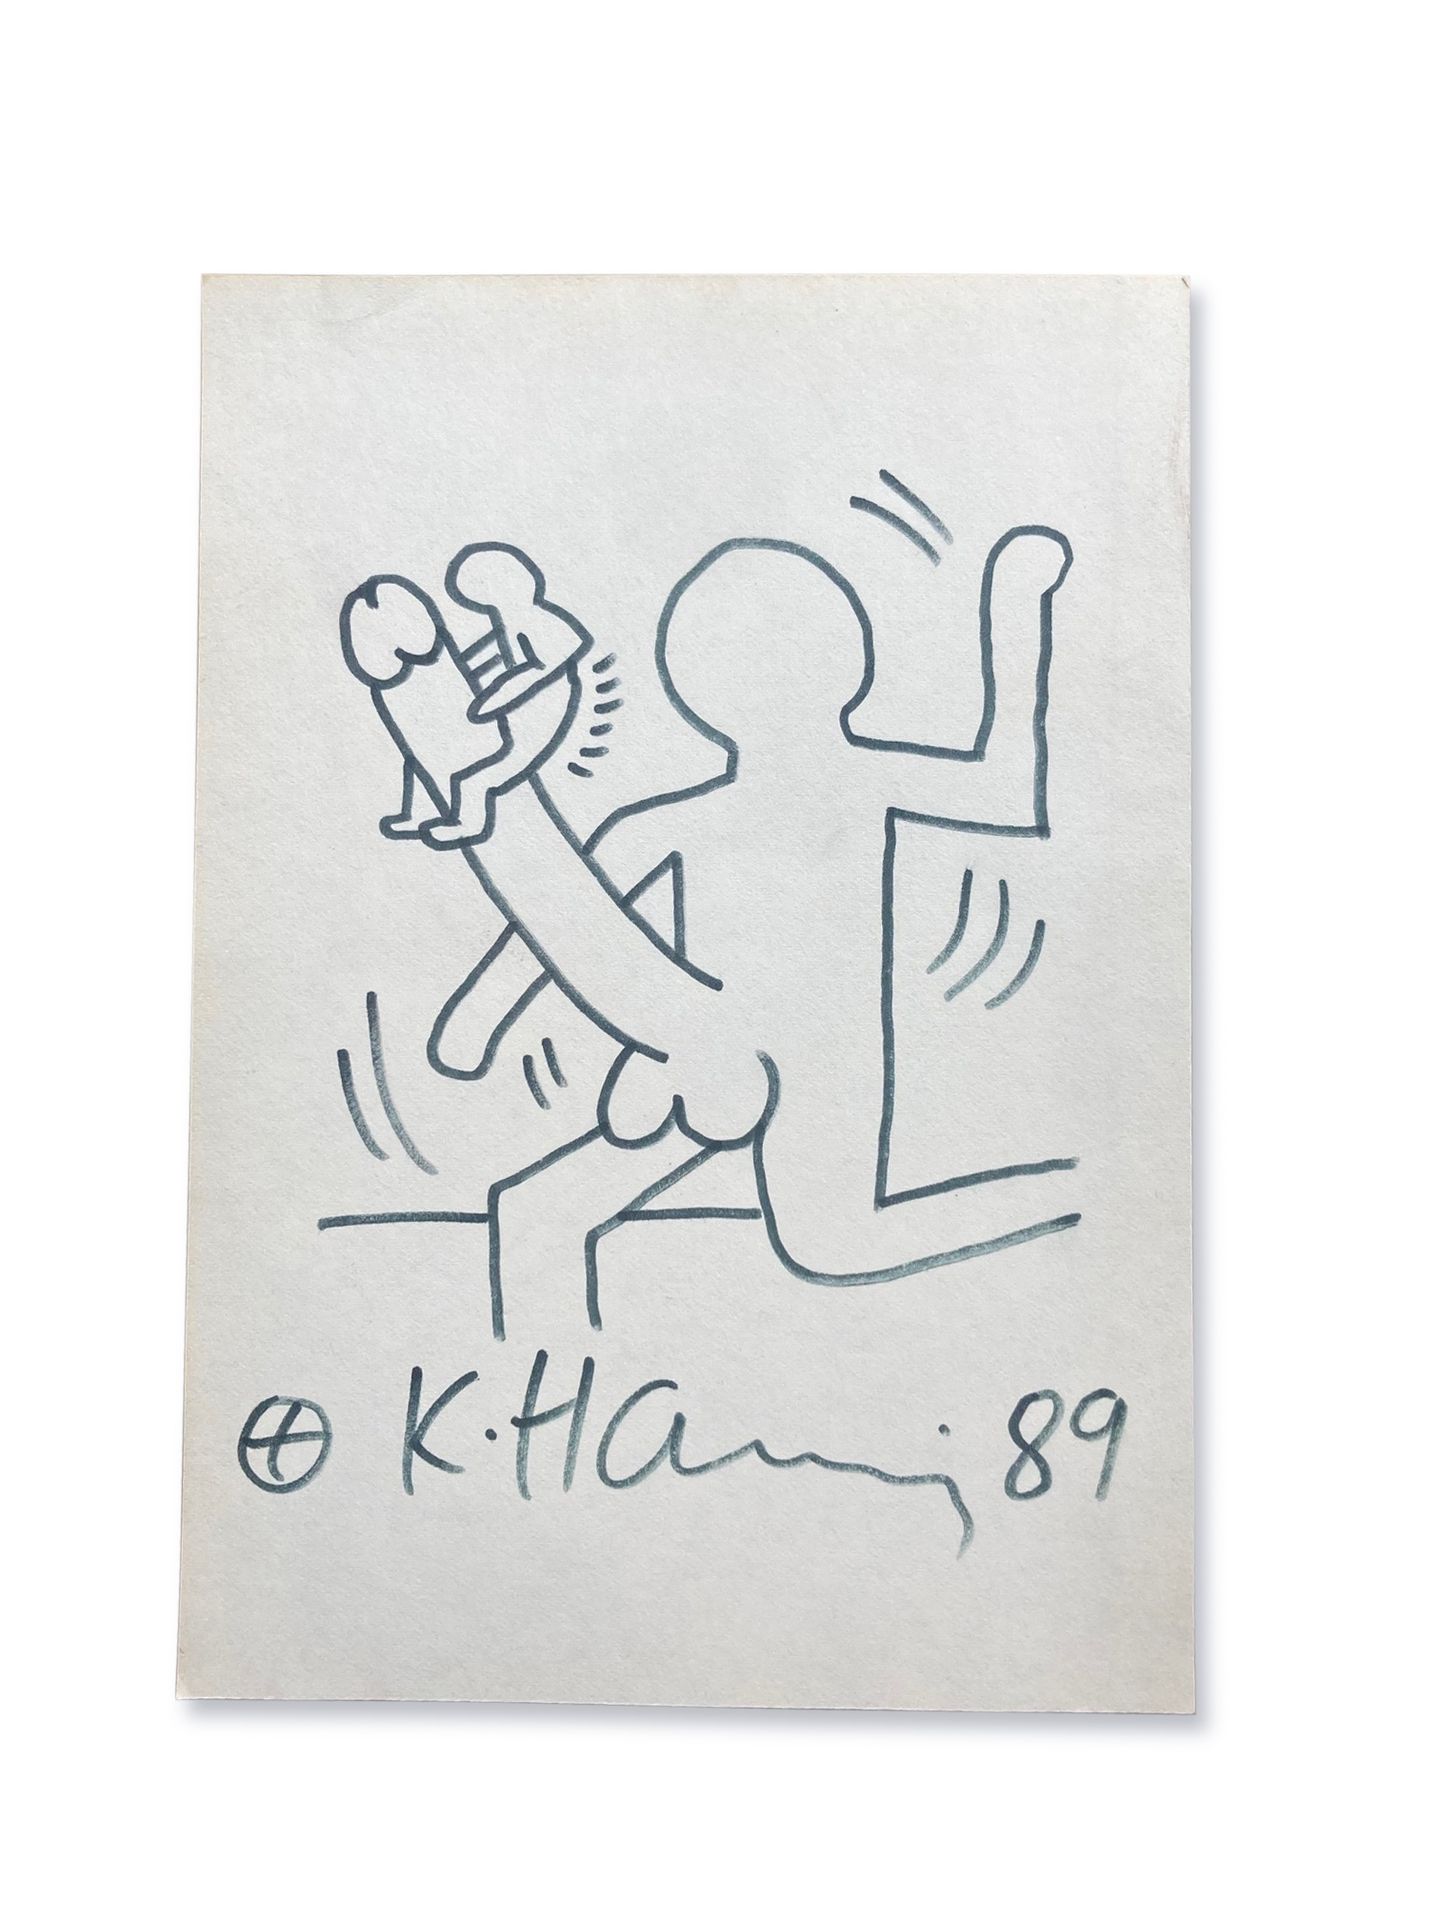 Keith HARING (1958-1990) (Attr.) Sas-titre, 1989
Dibujo a rotulador sobre papel &hellip;